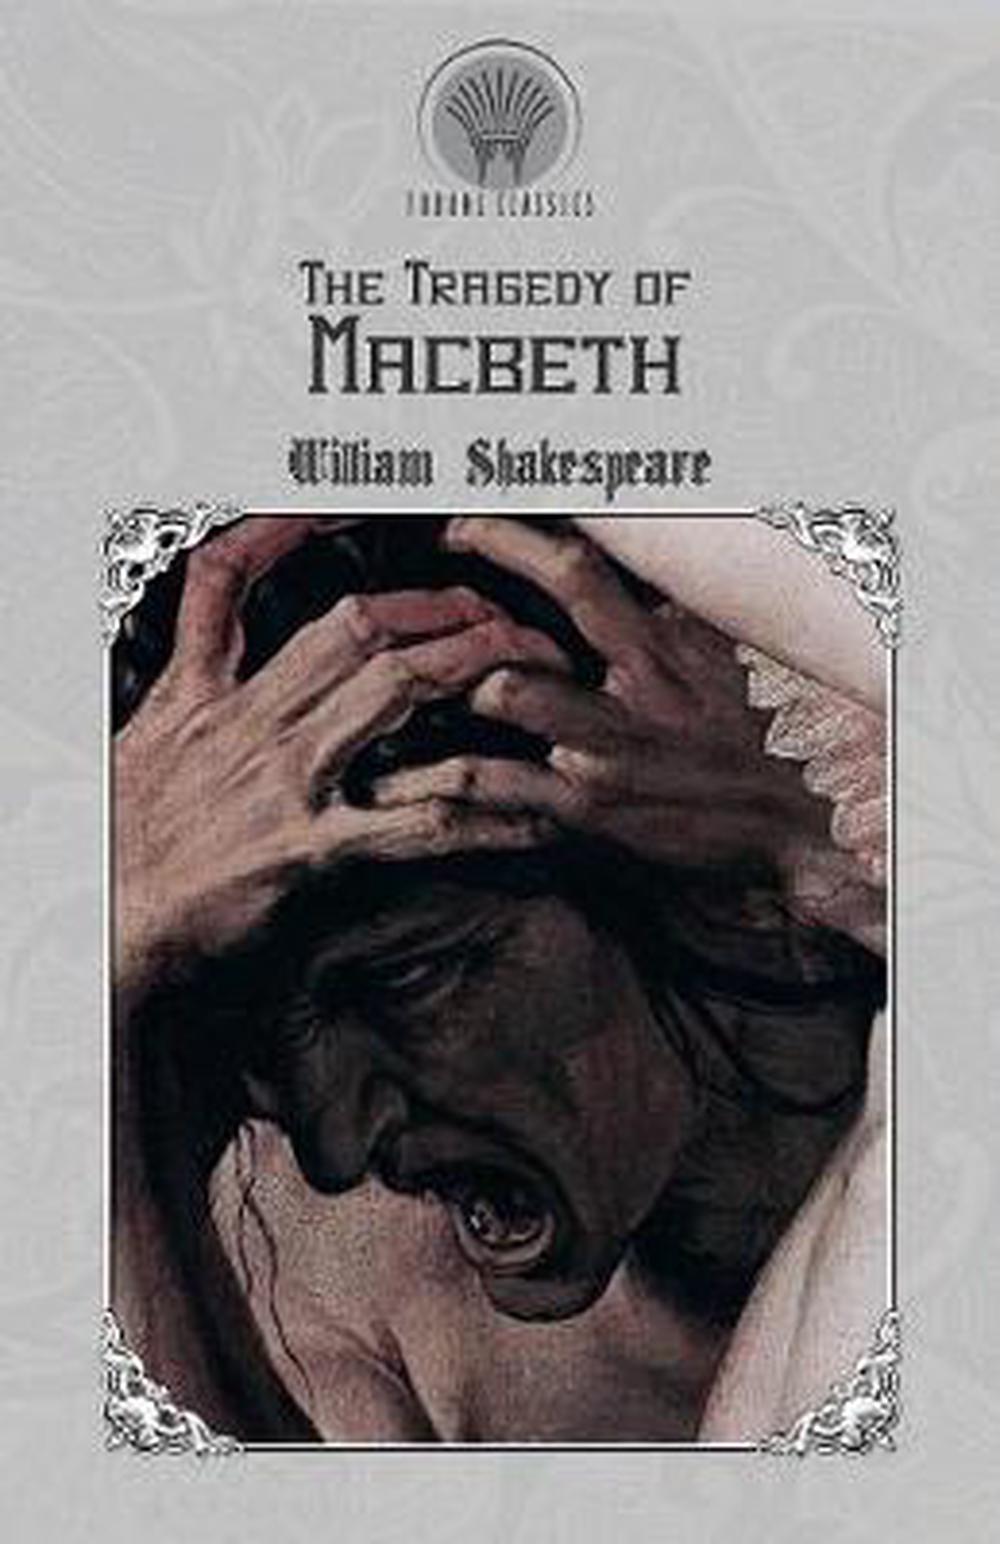 macbeth written by shakespeare